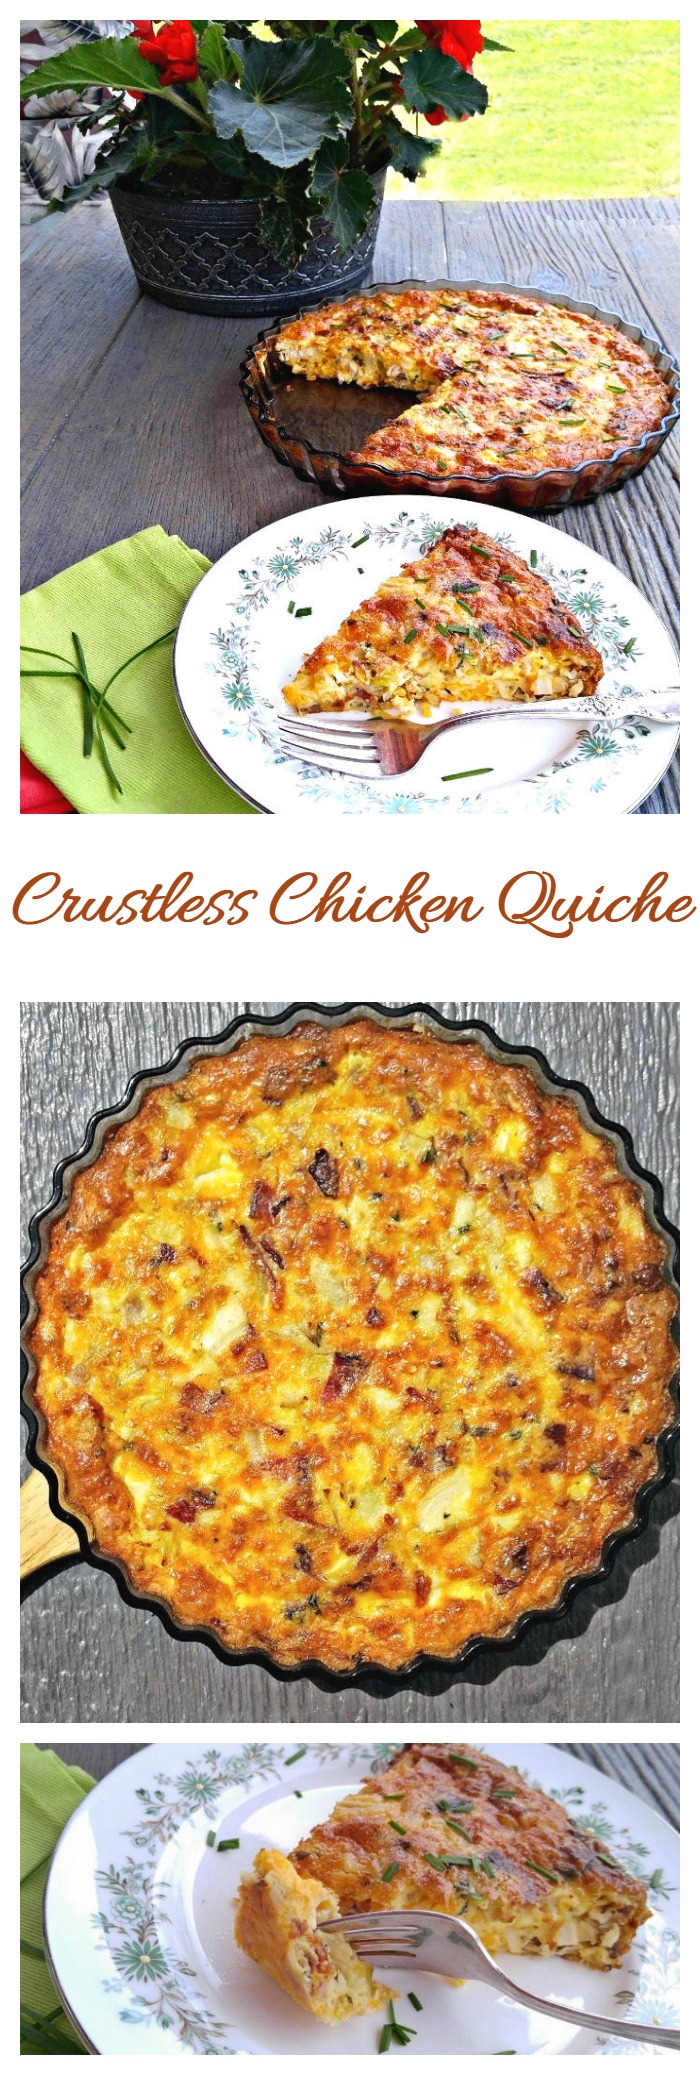 Kooreta kana quiche - tervislik ja kerge hommikusöögi retsept